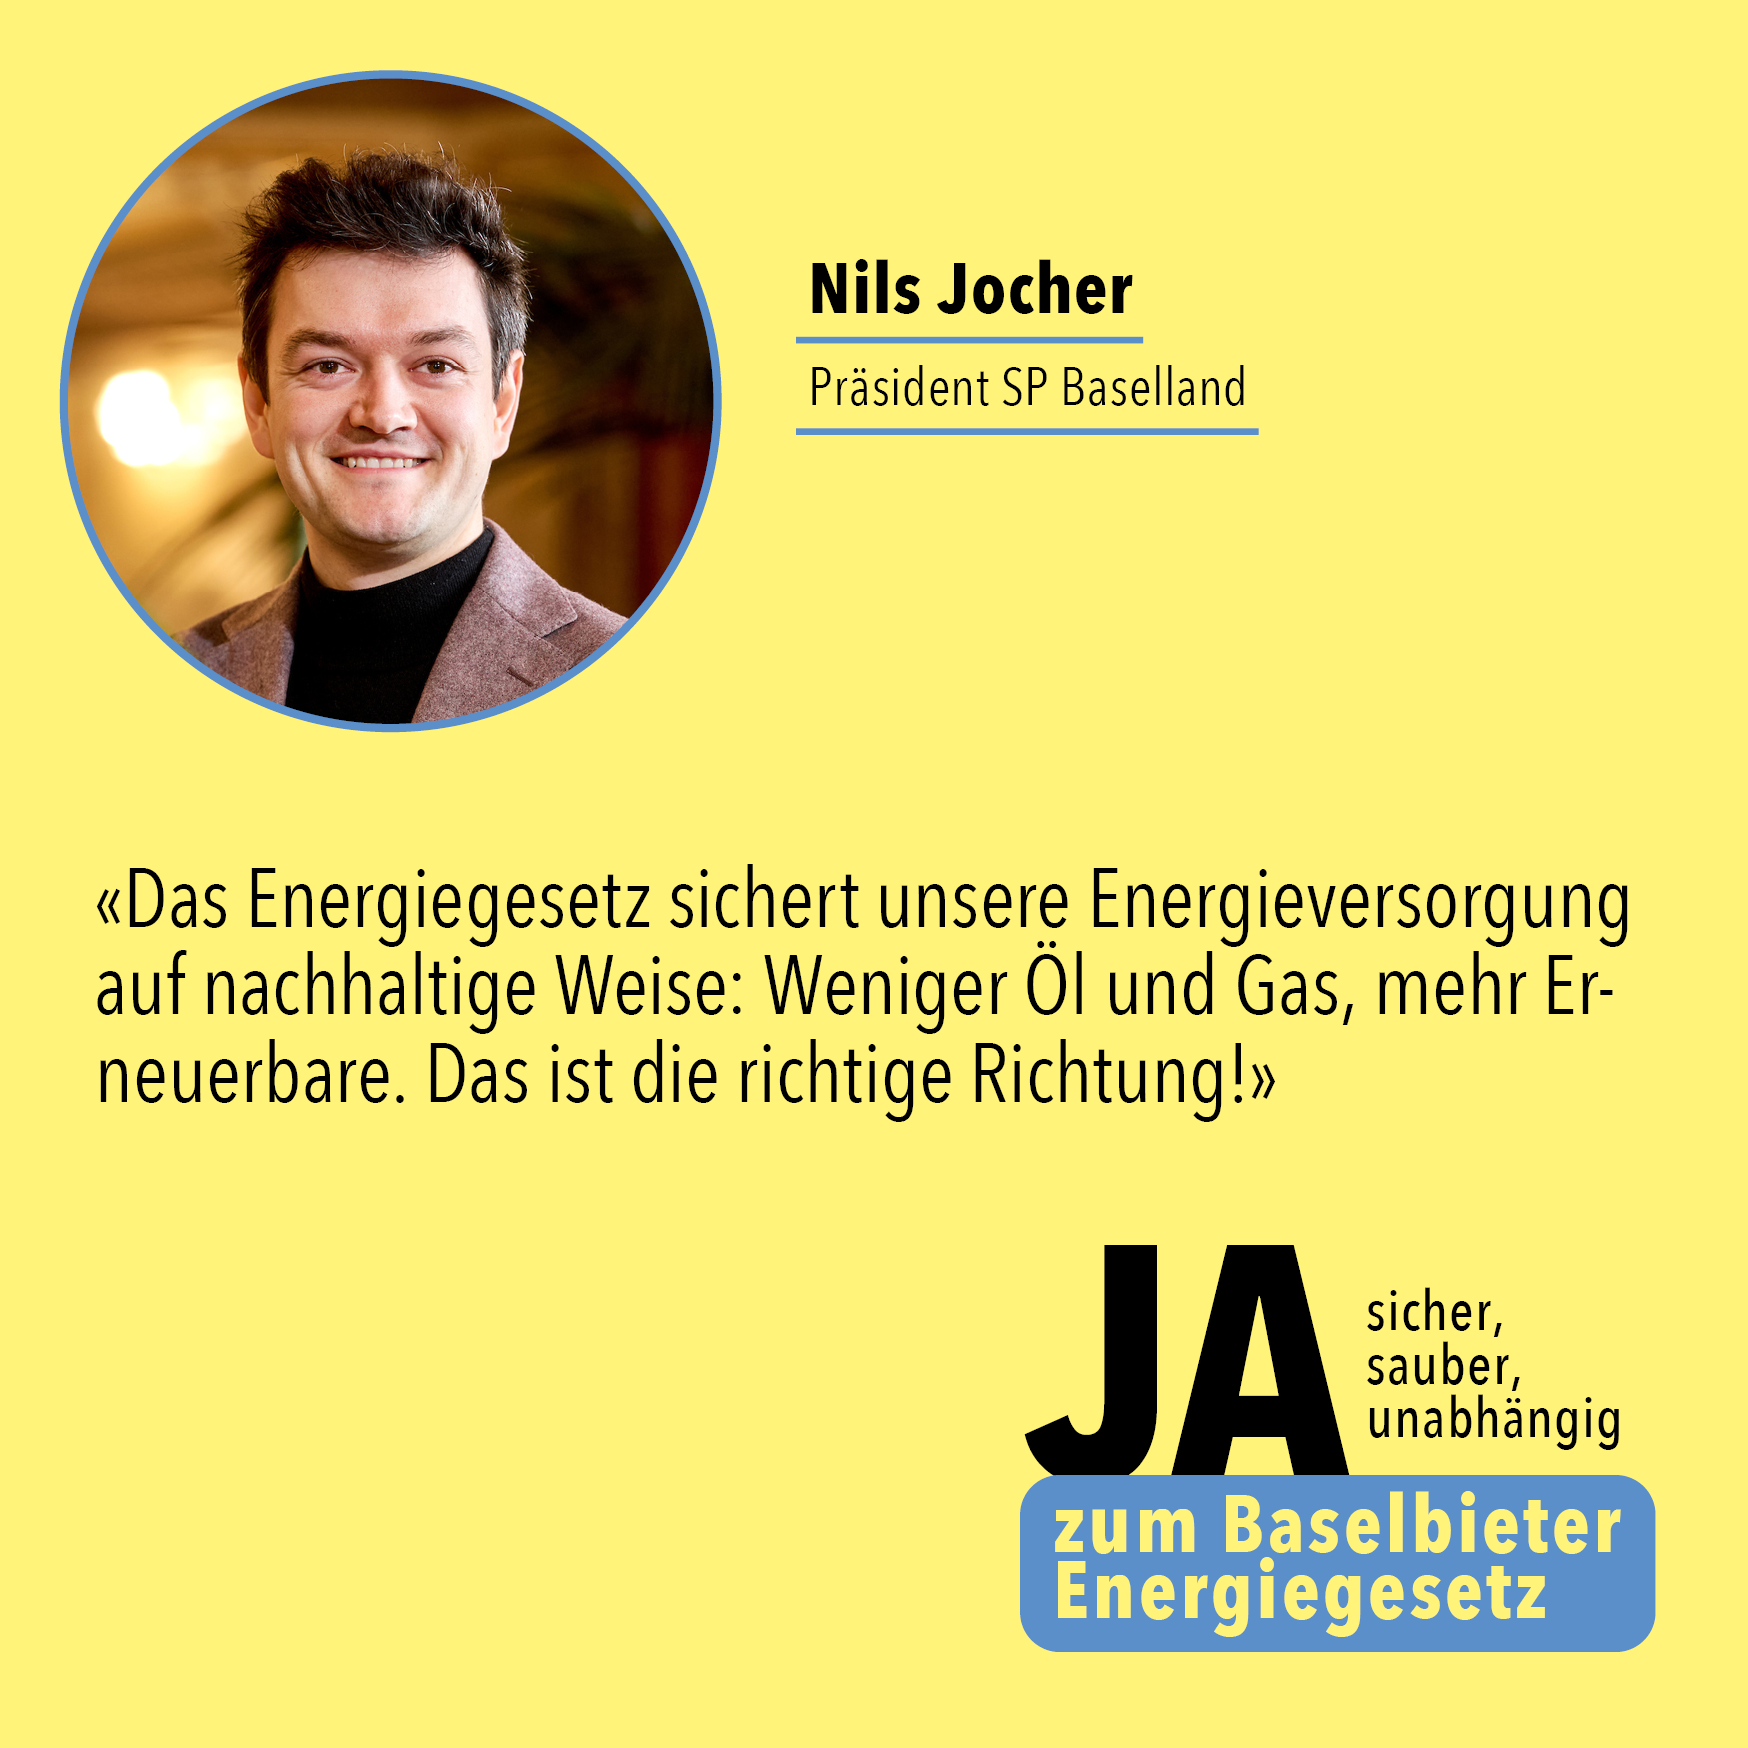 Nils Jocher